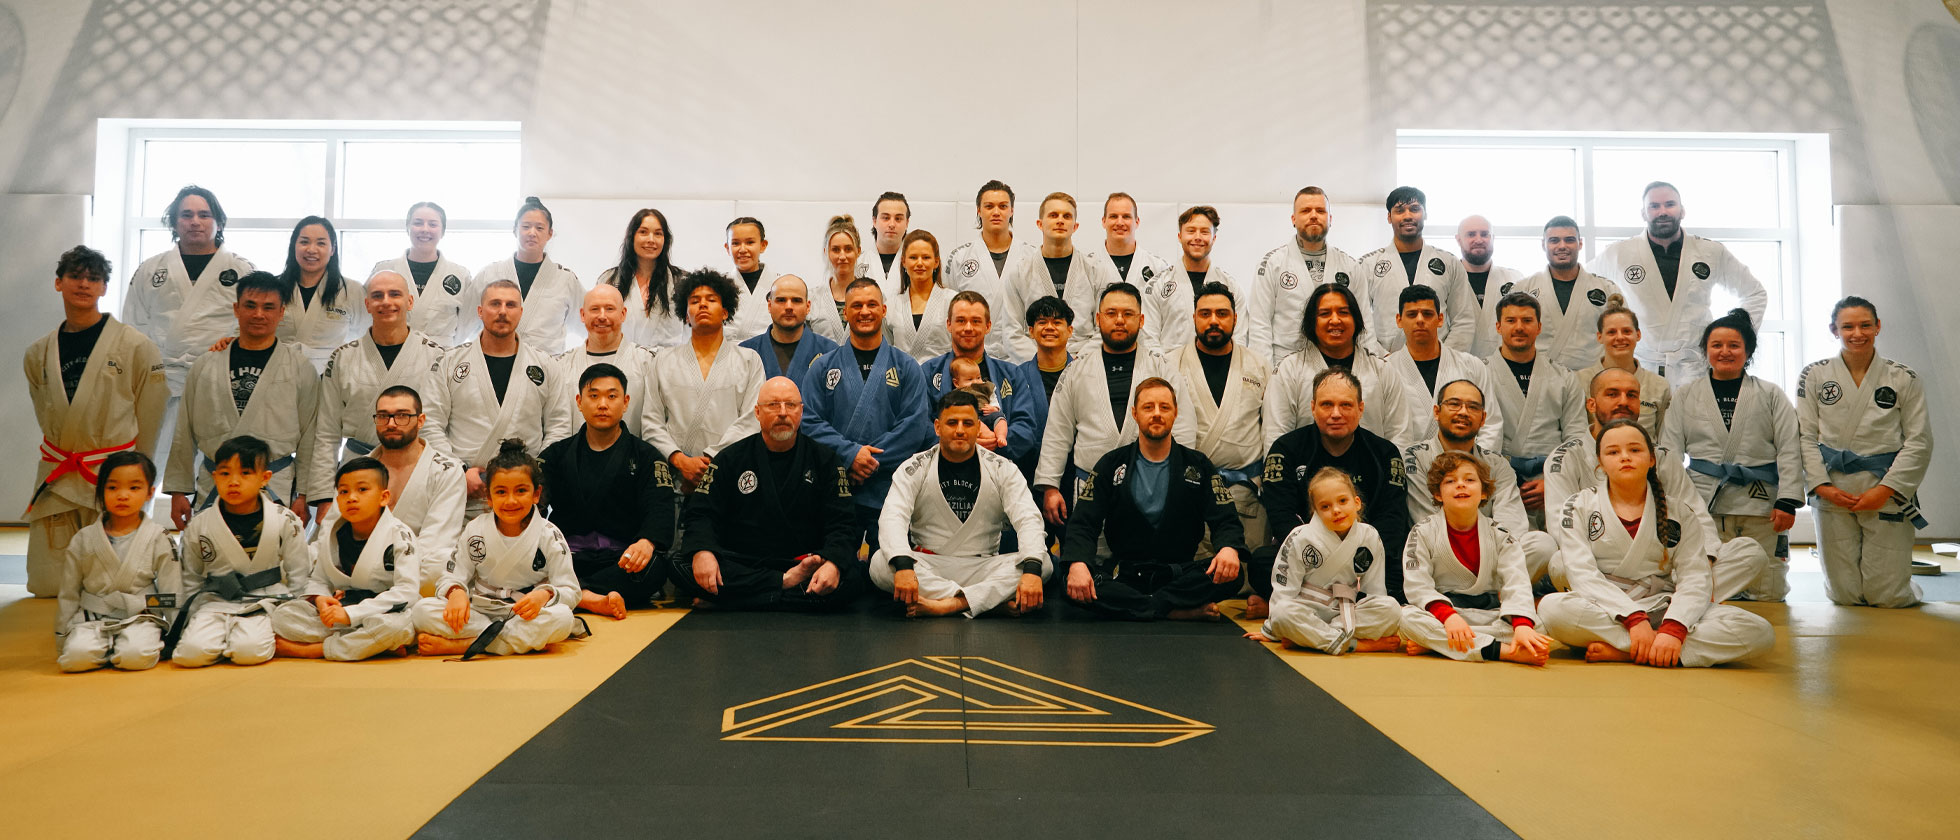 Why Bairro 124 Is Ranked One of the Best Jiu-Jitsu Academies In Edmonton, Alberta